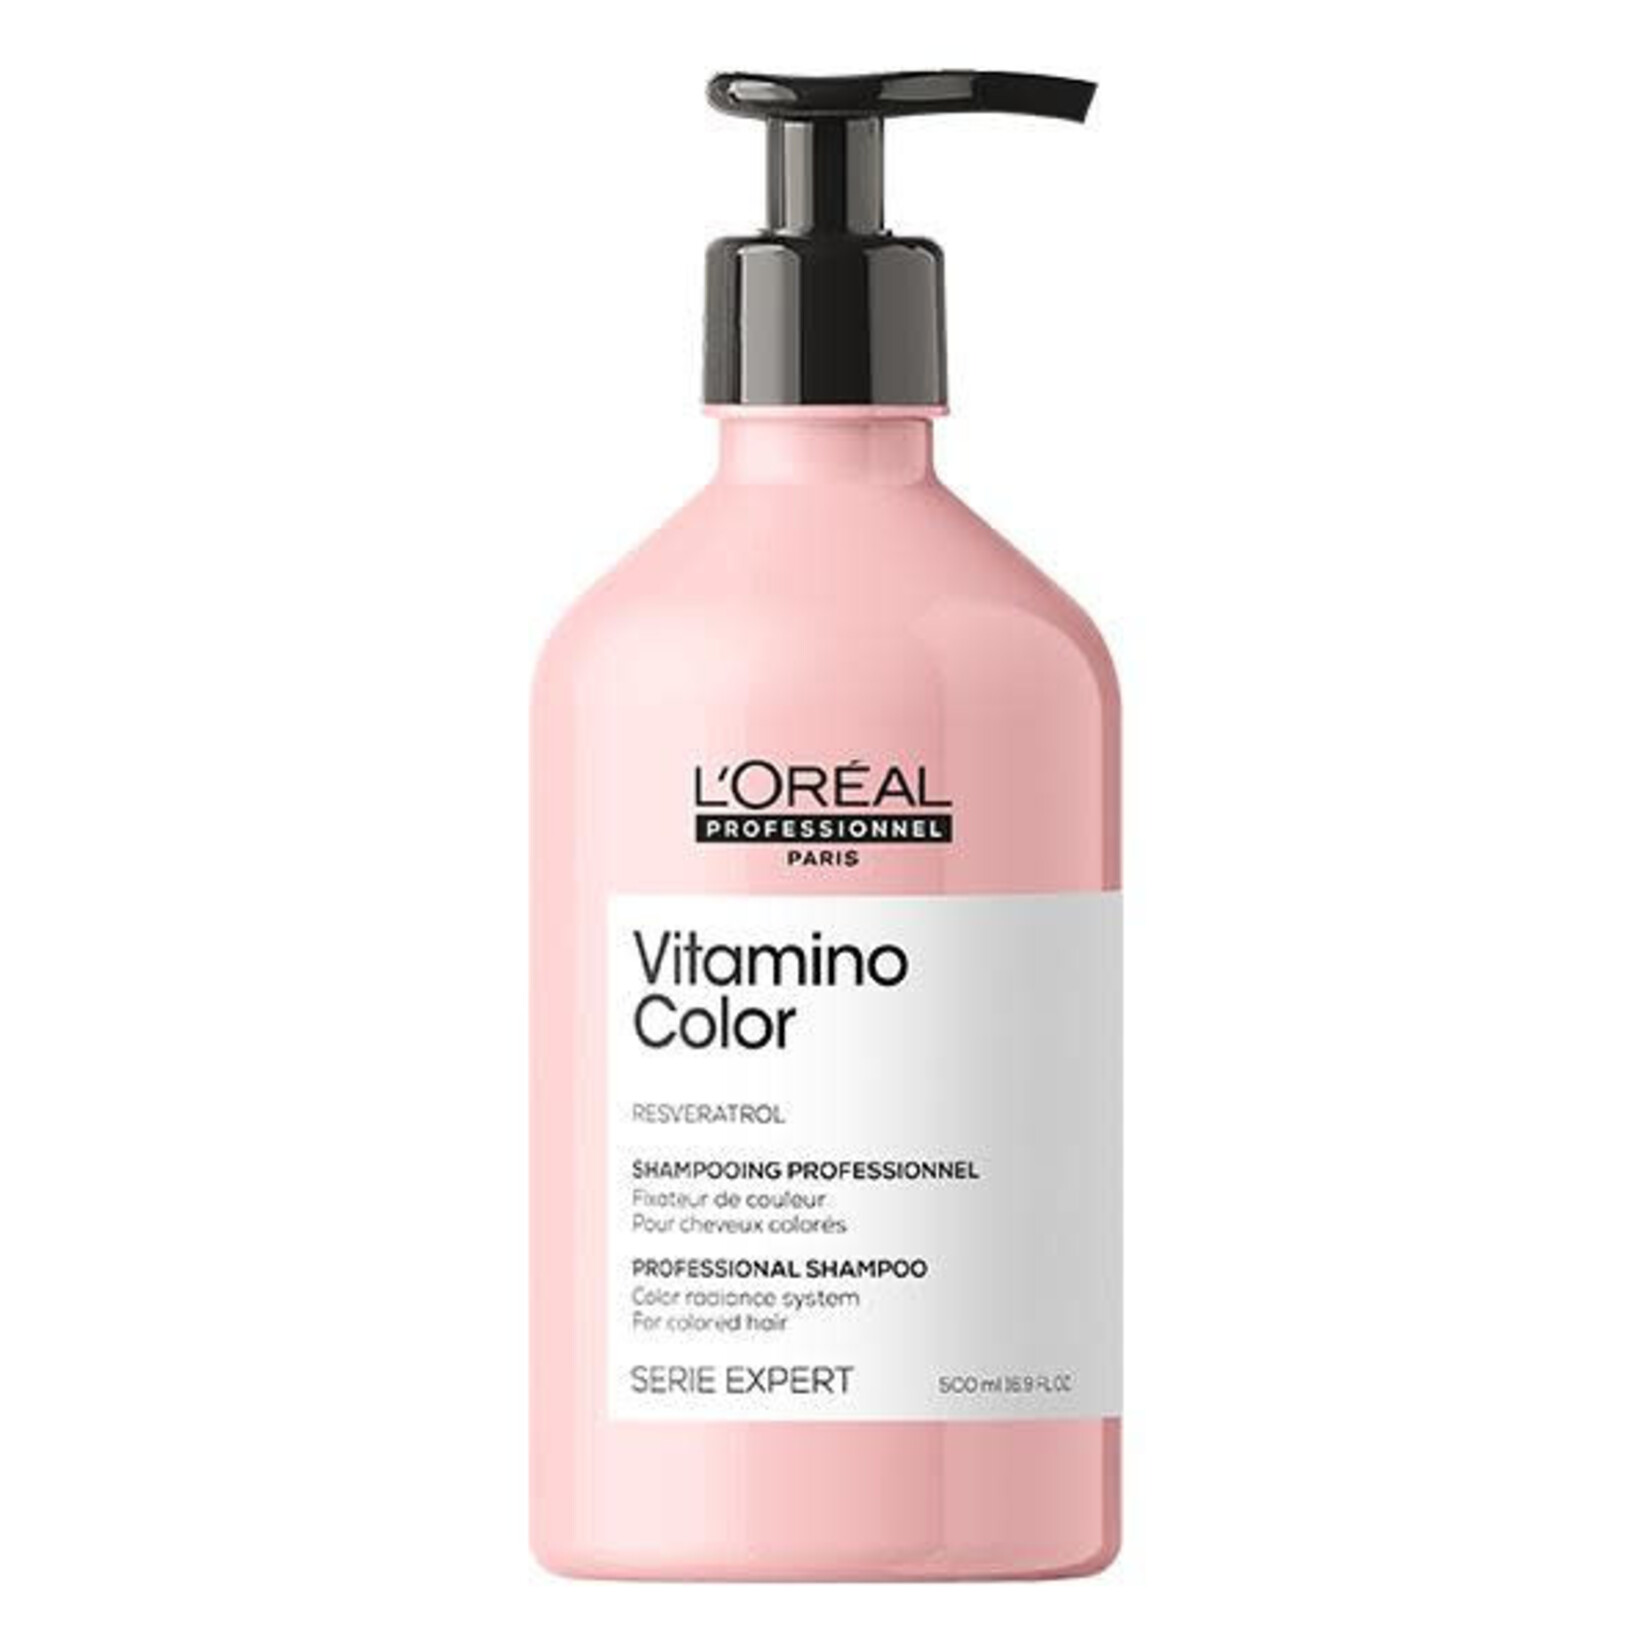 L'Oréal L'Oréal Professionnel - Vitamino Color - Shampoing Fixateur & Perfecteur De Couleur 500ml